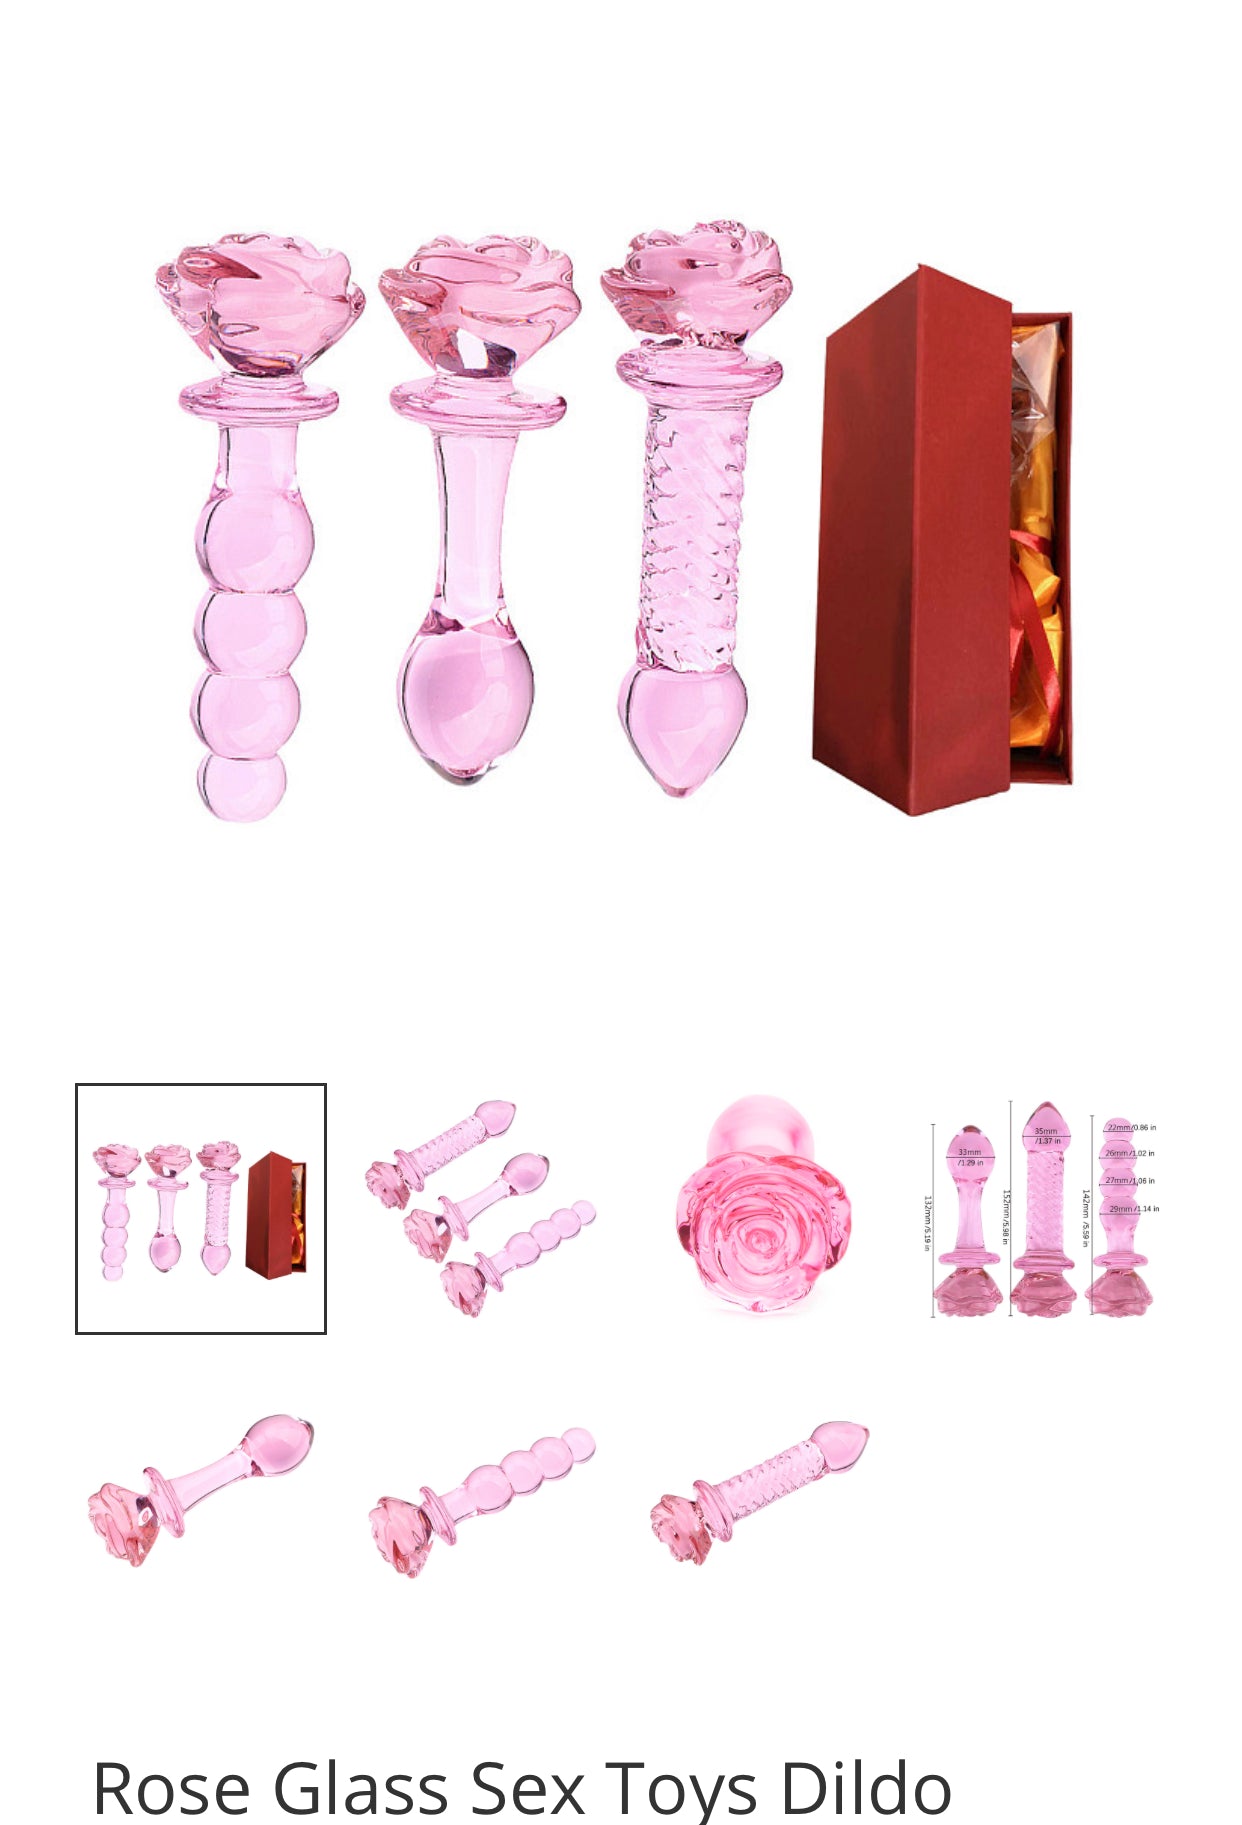 Rose Glass Sex Toys Dildo